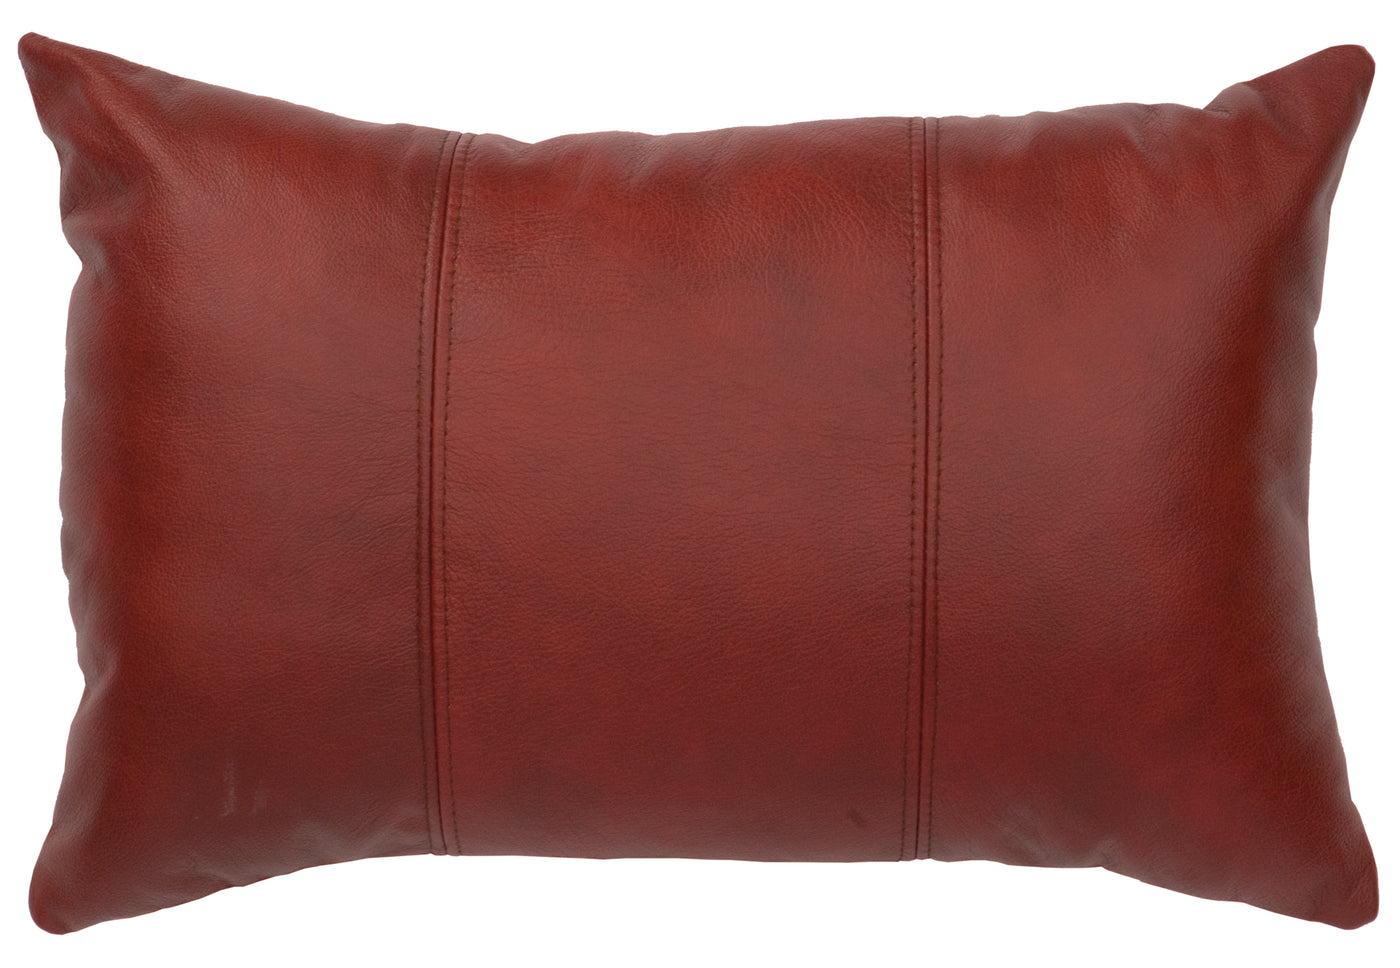 Canvello 紅色皮革枕頭 - 織物背面 - 12"x18"